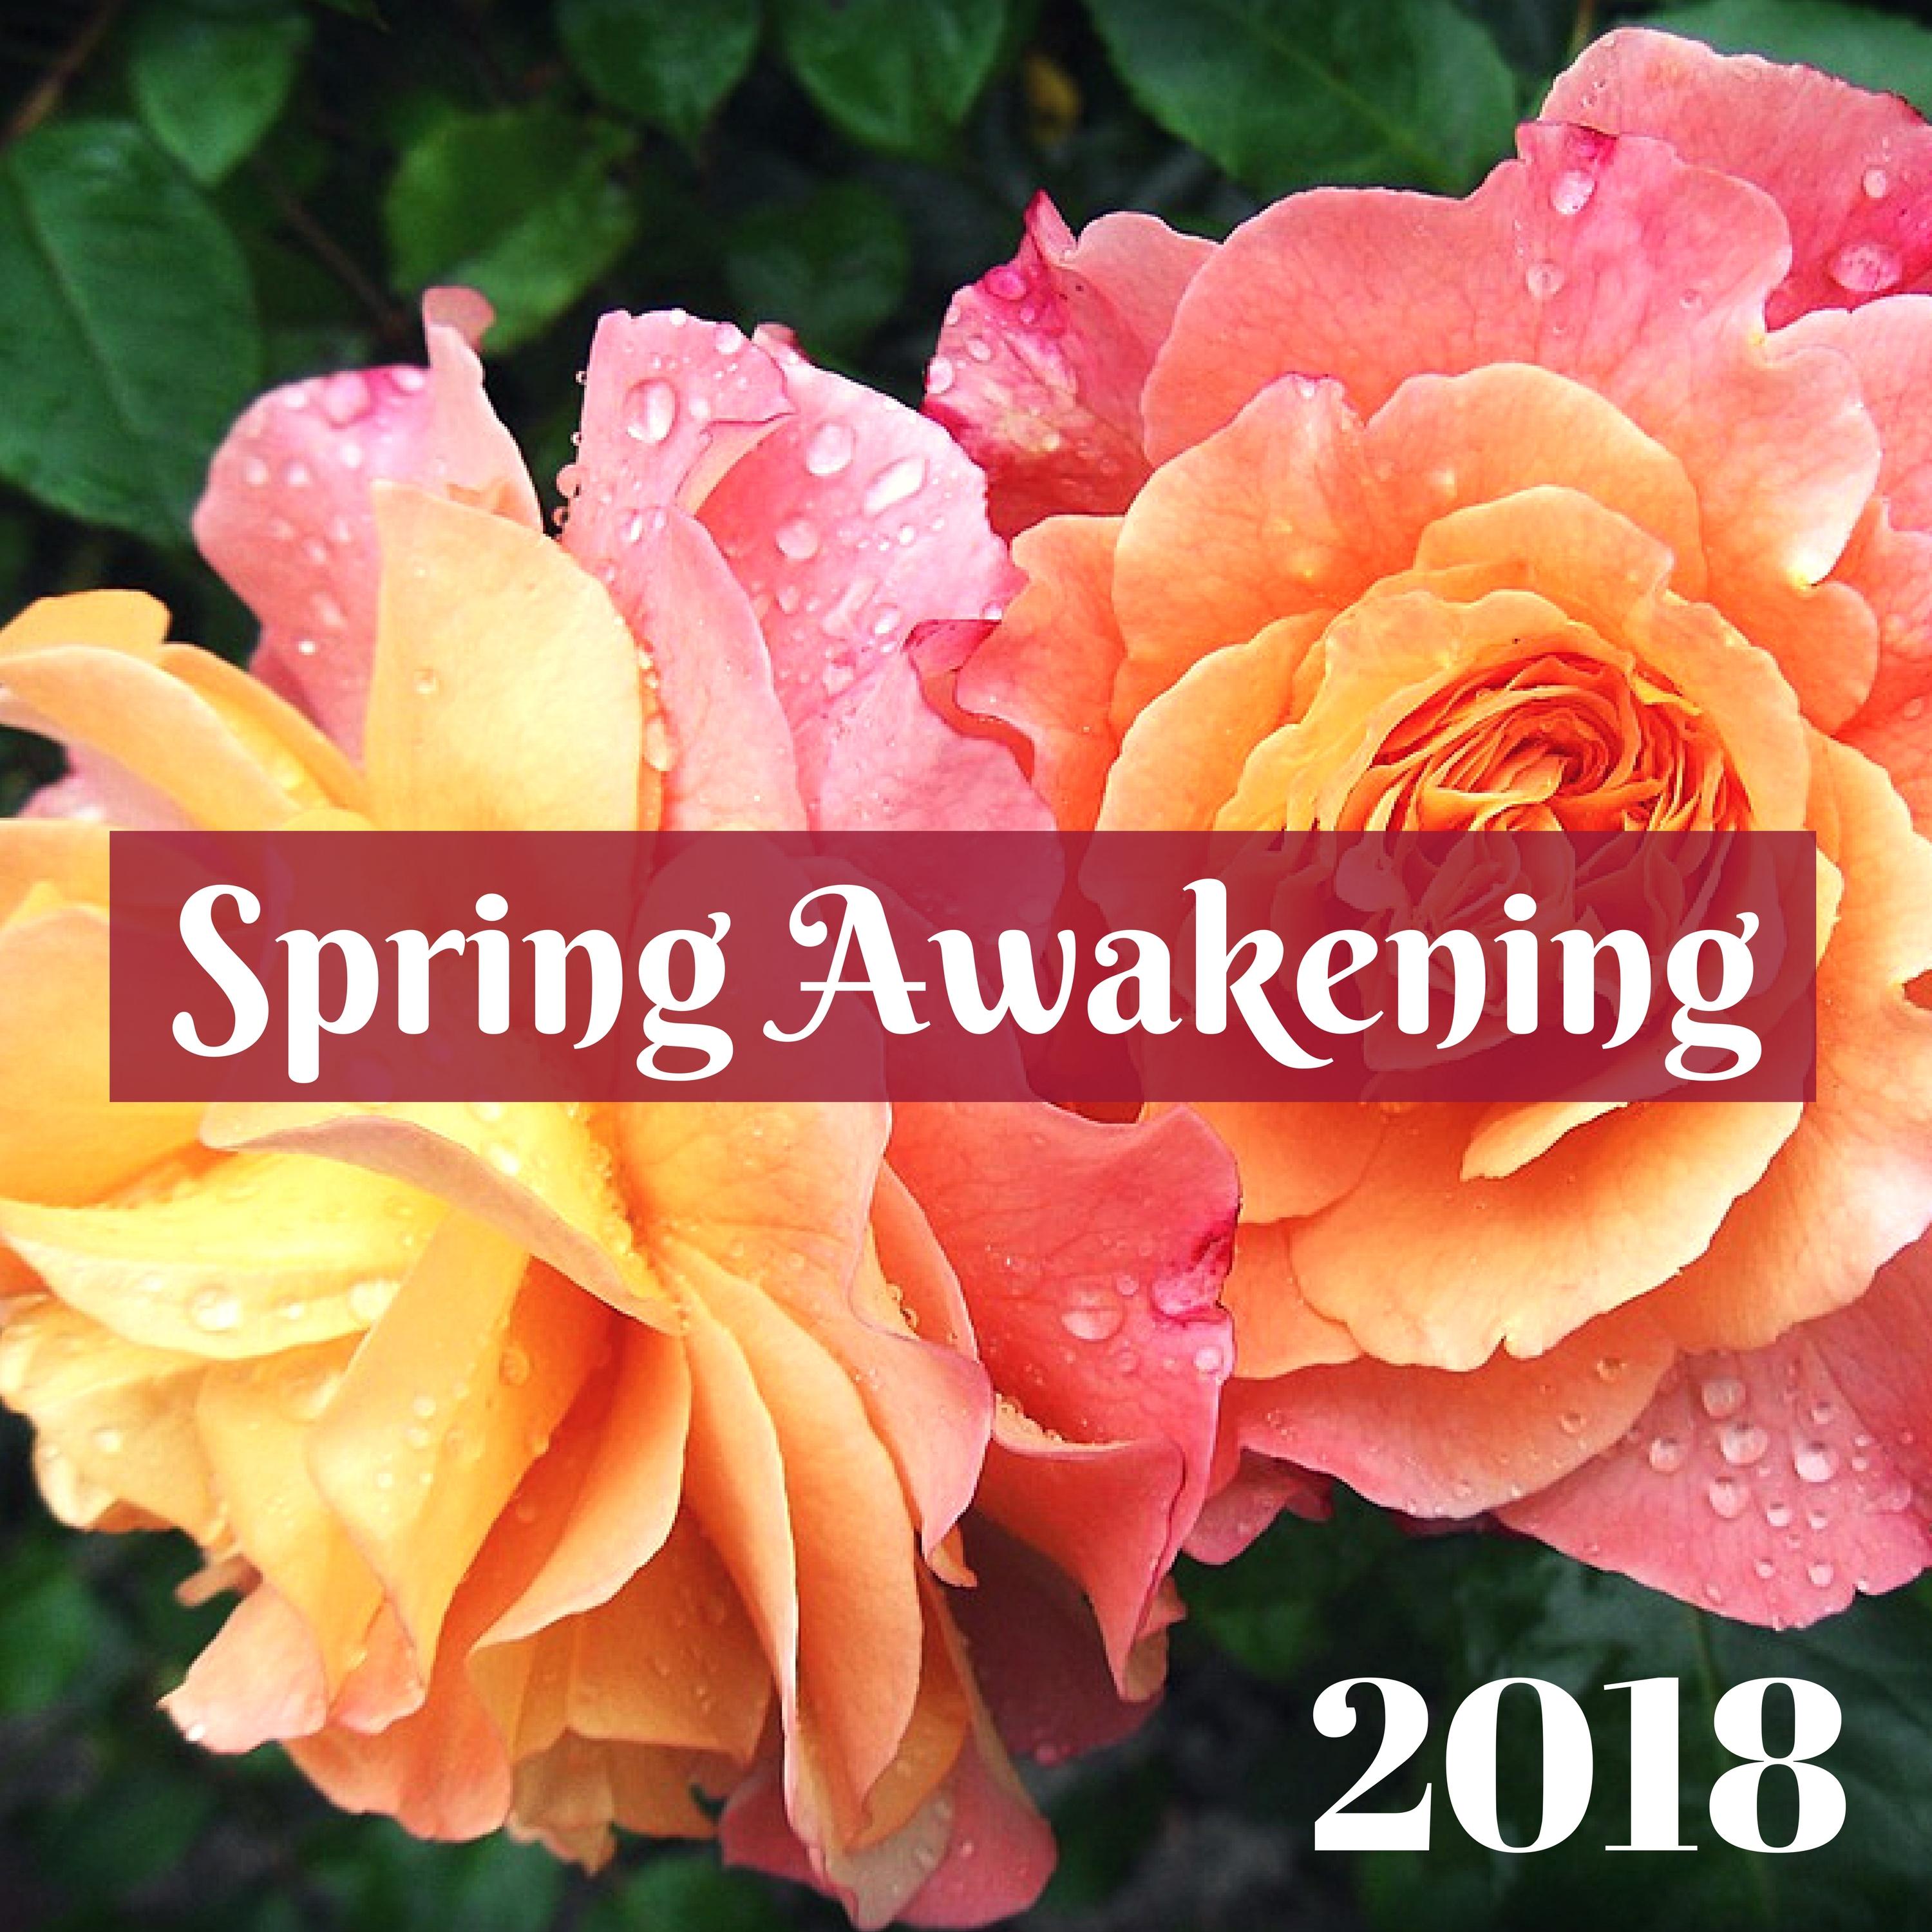 Spring Awakening 2018 - Springtime Happy Nature Music for Feeling Good & Positive Feelings